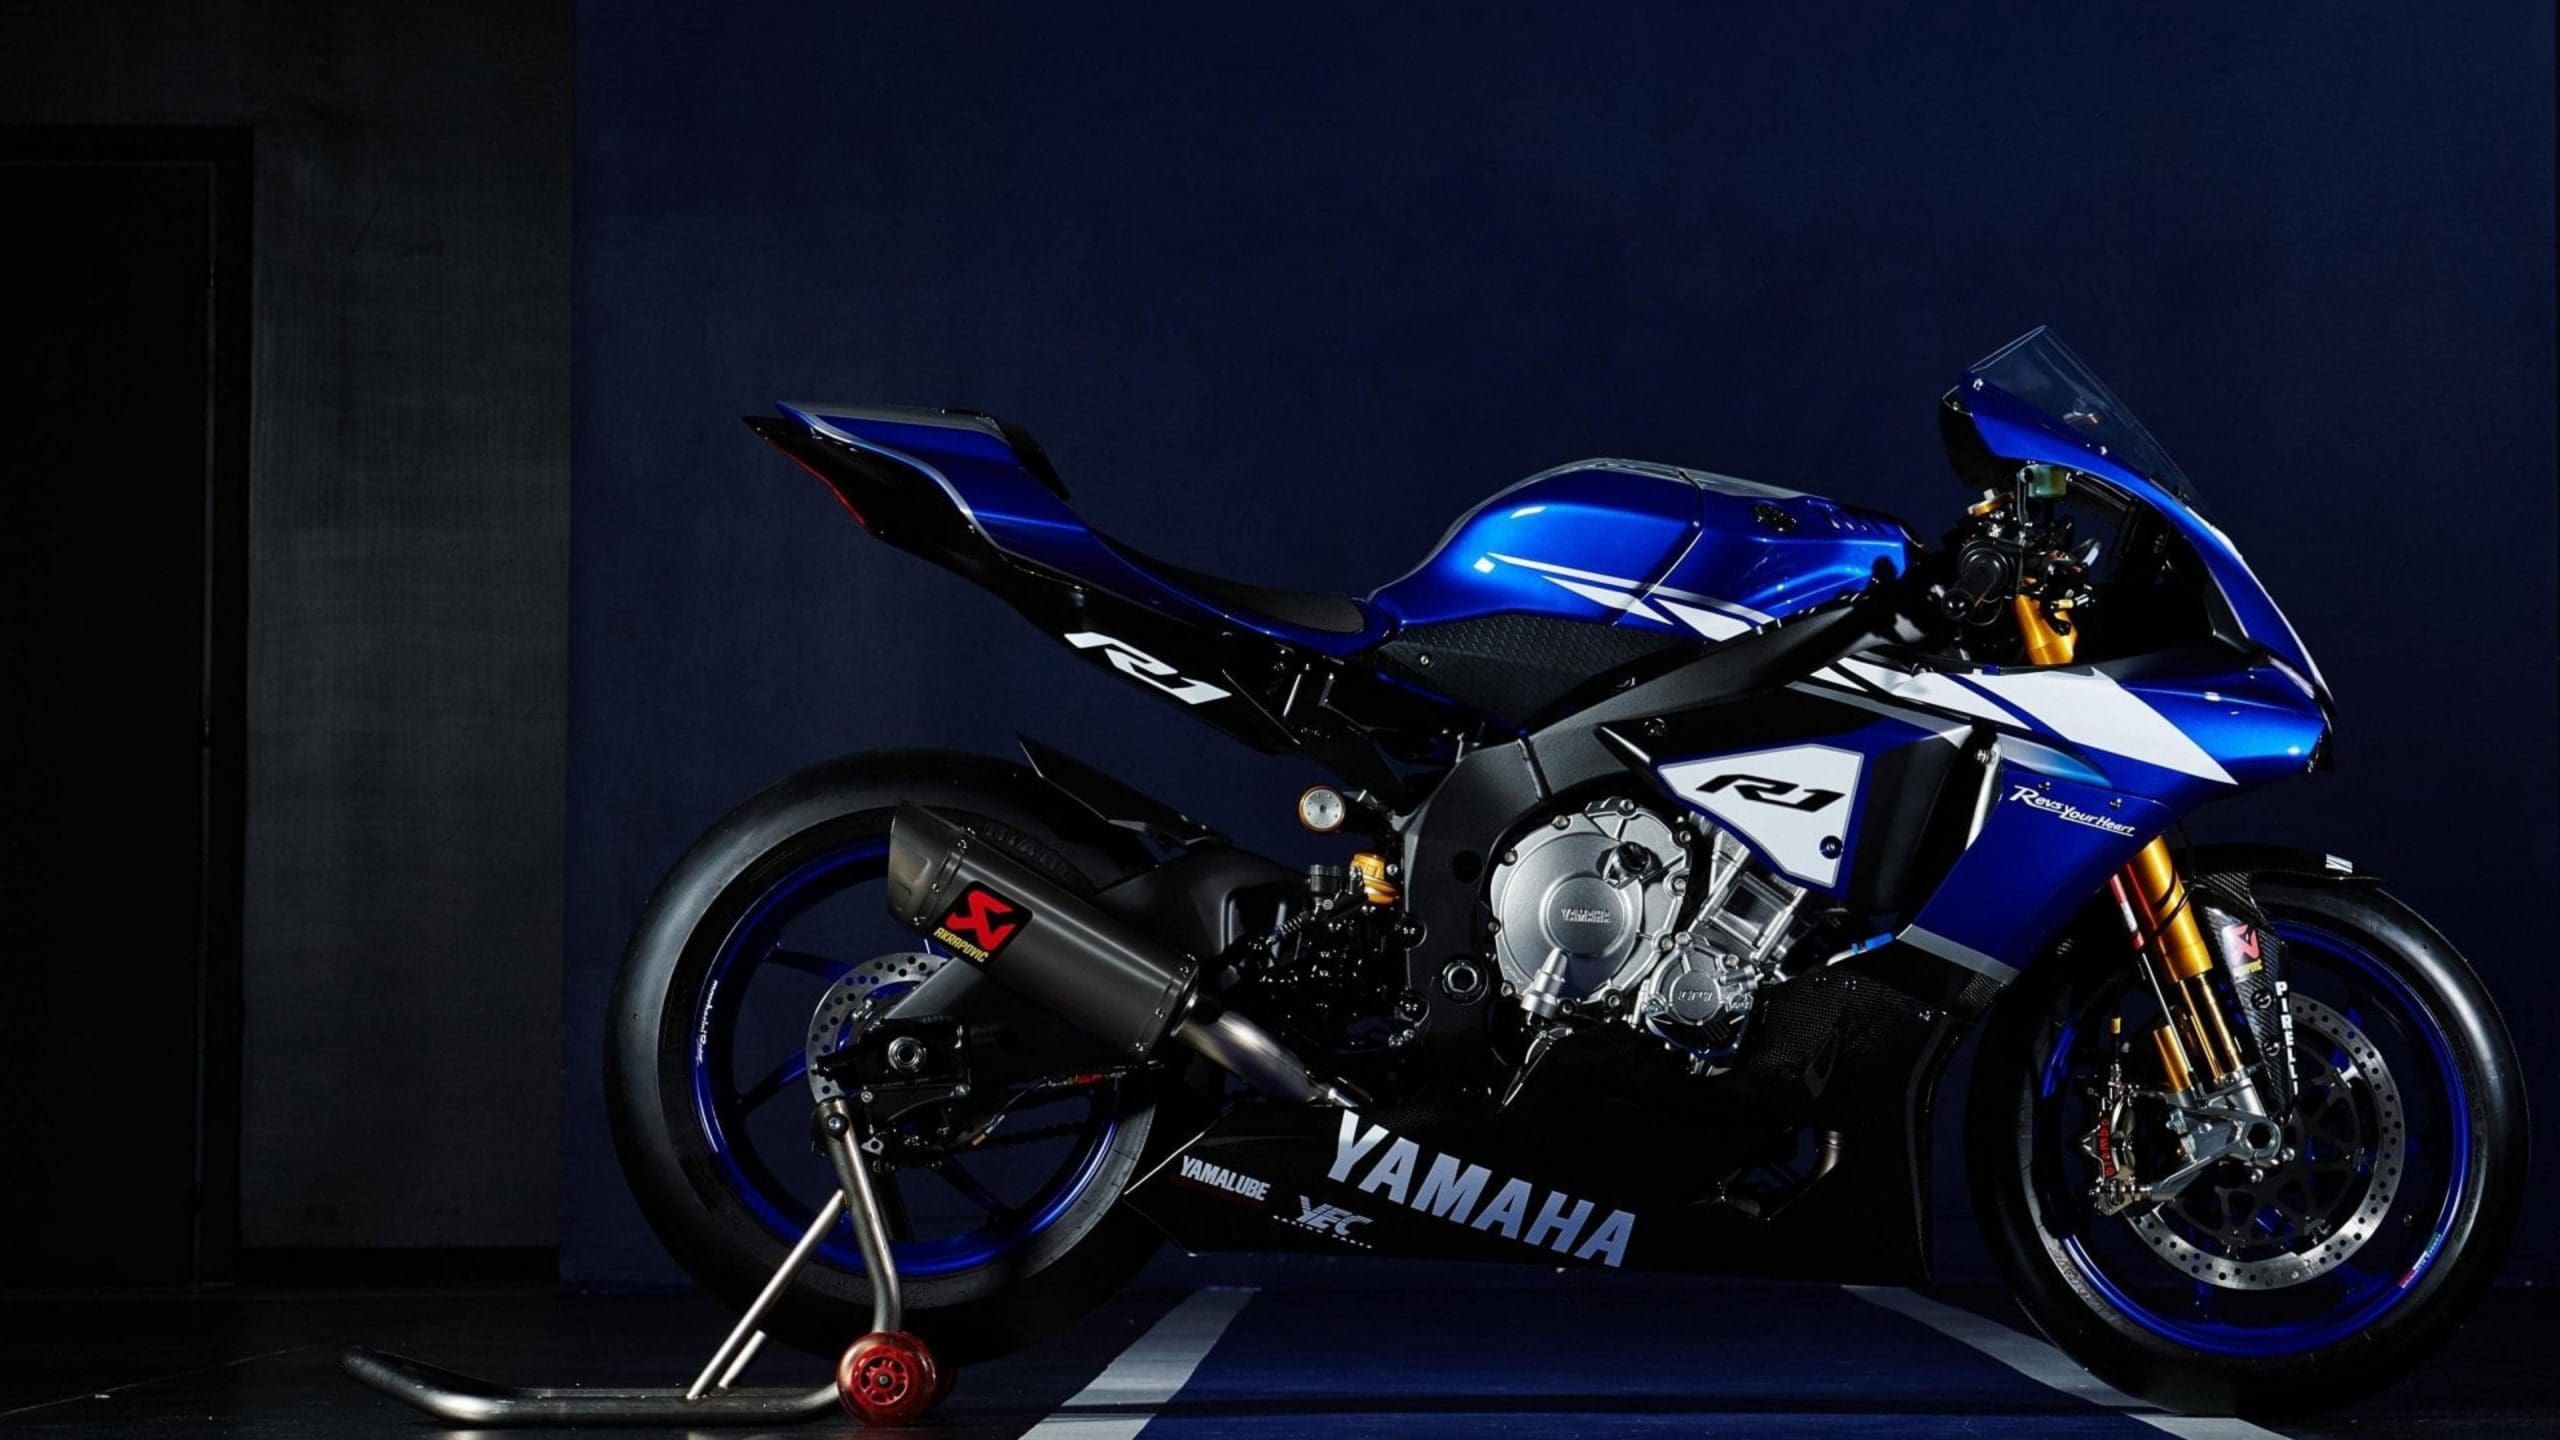 yamaha motorcycle wallpaper hd